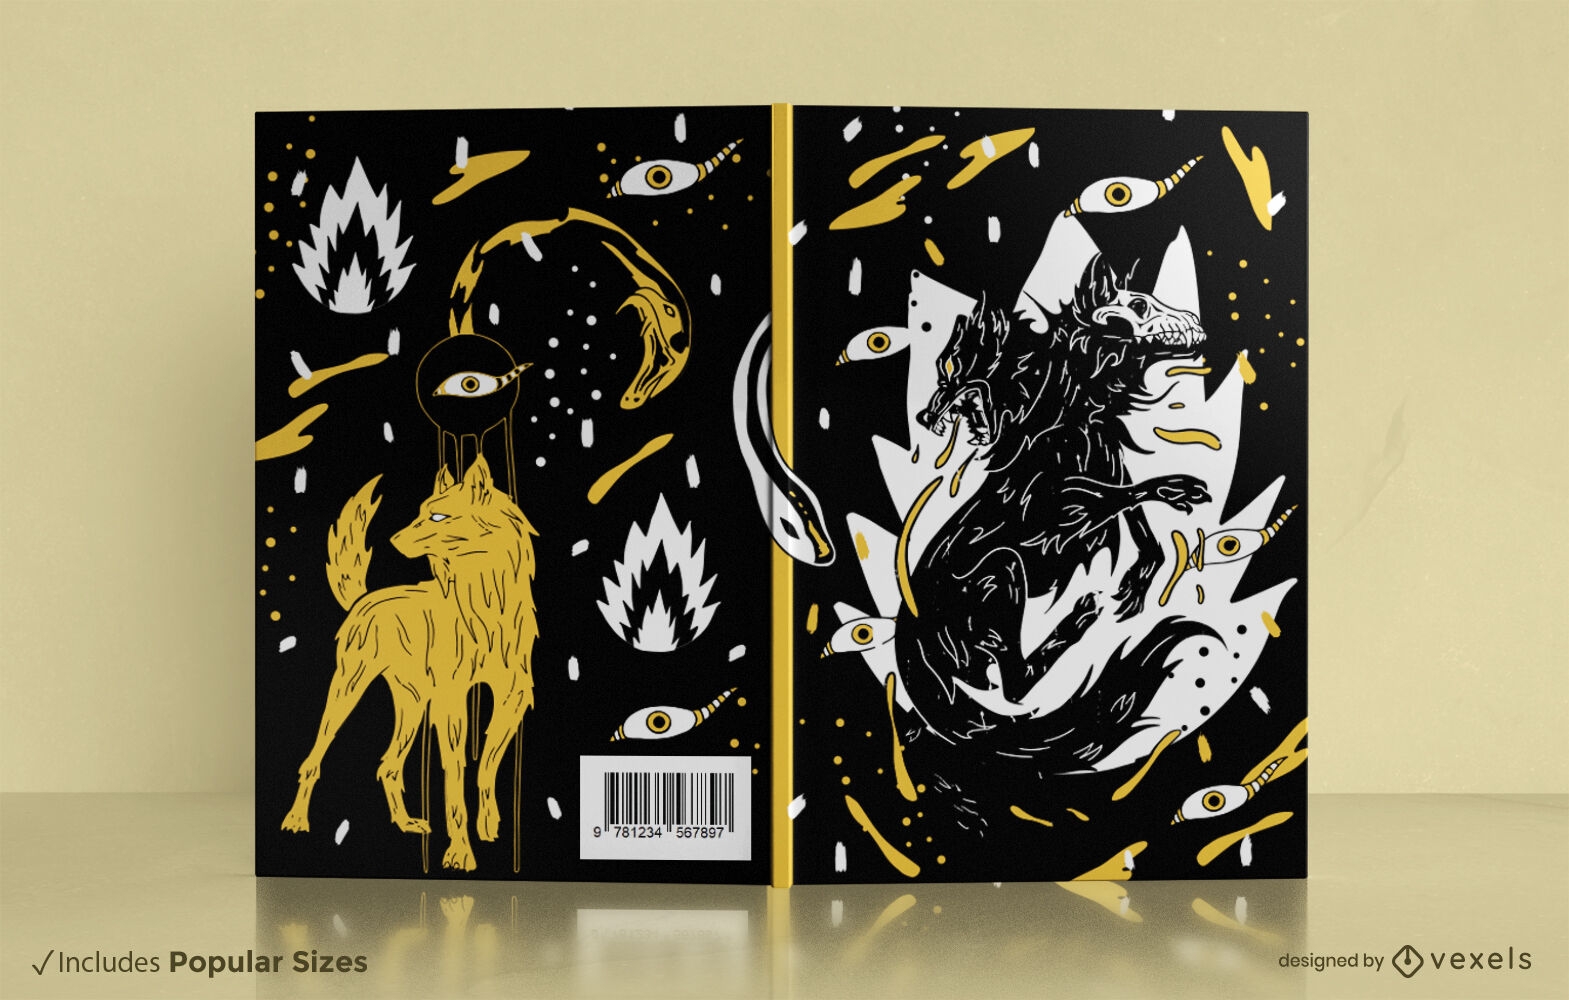 Descarga Vector De Diseño De Portada De Libro De Lobo Y Serpiente